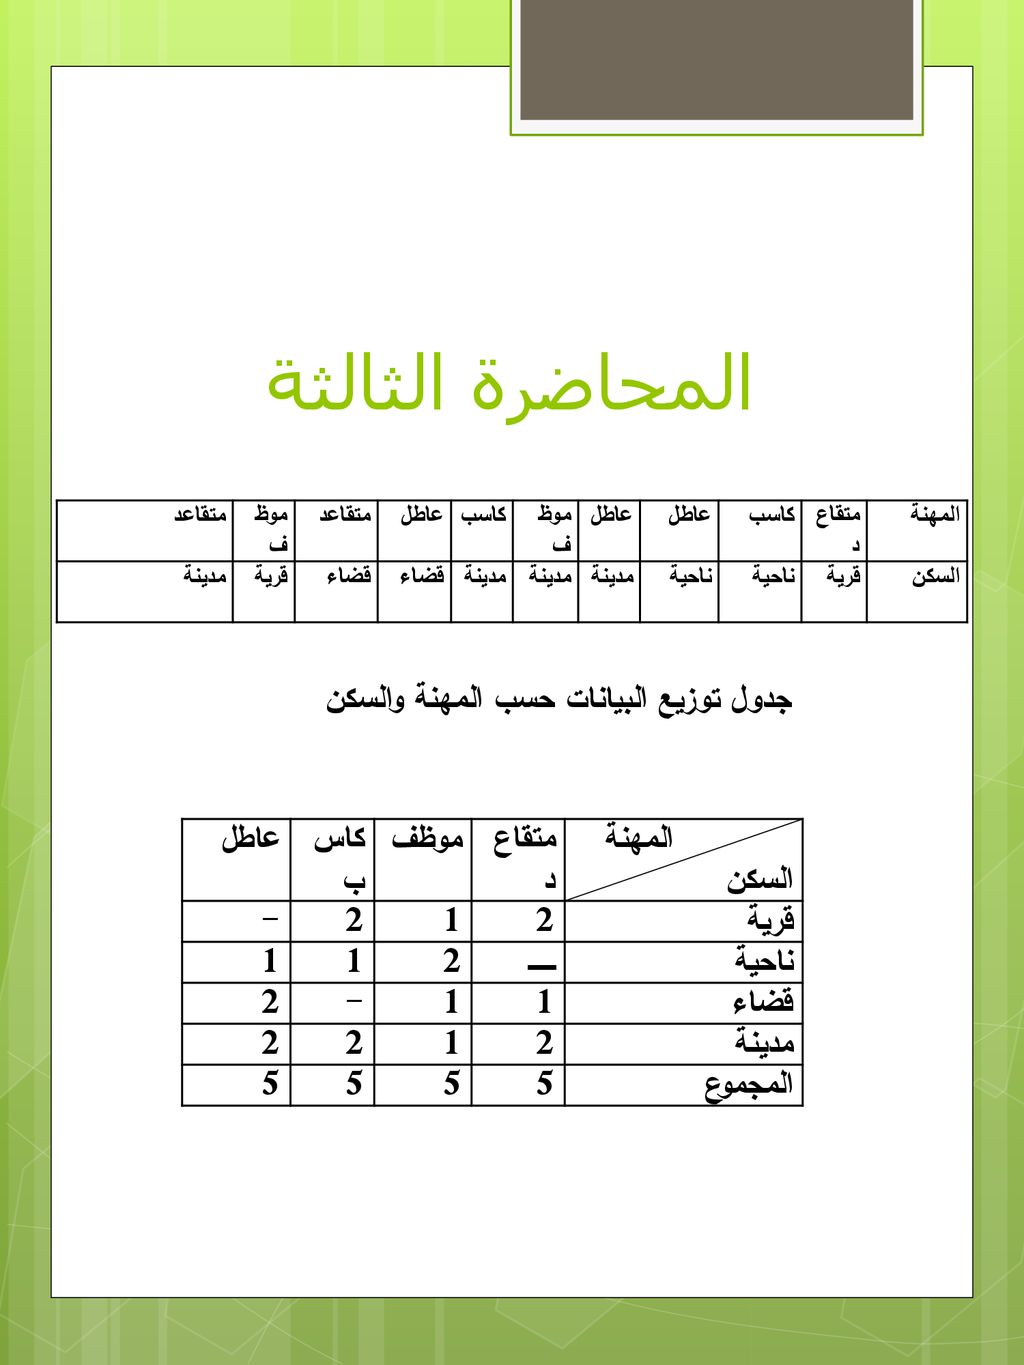 جدول توزيع البيانات حسب المهنة والسكن